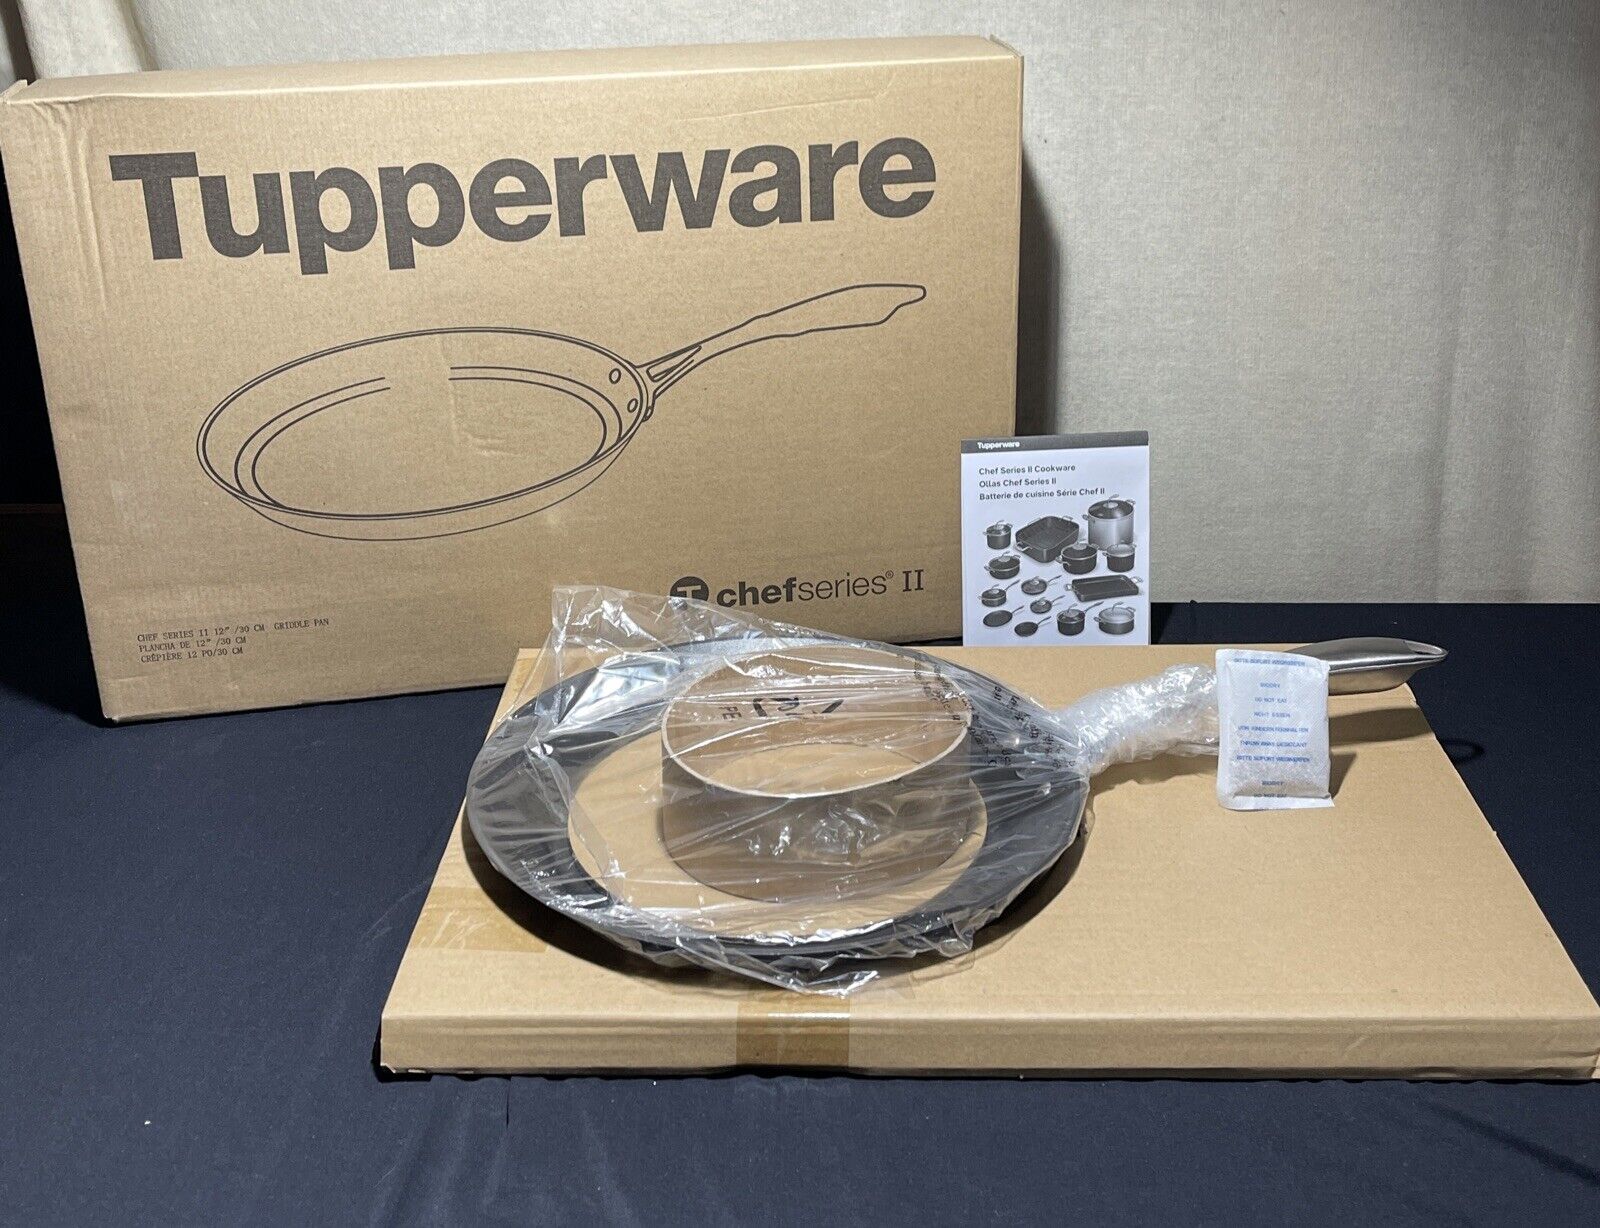 Tupperware Chef series II  12”/30 CM GRIDDLE PAN